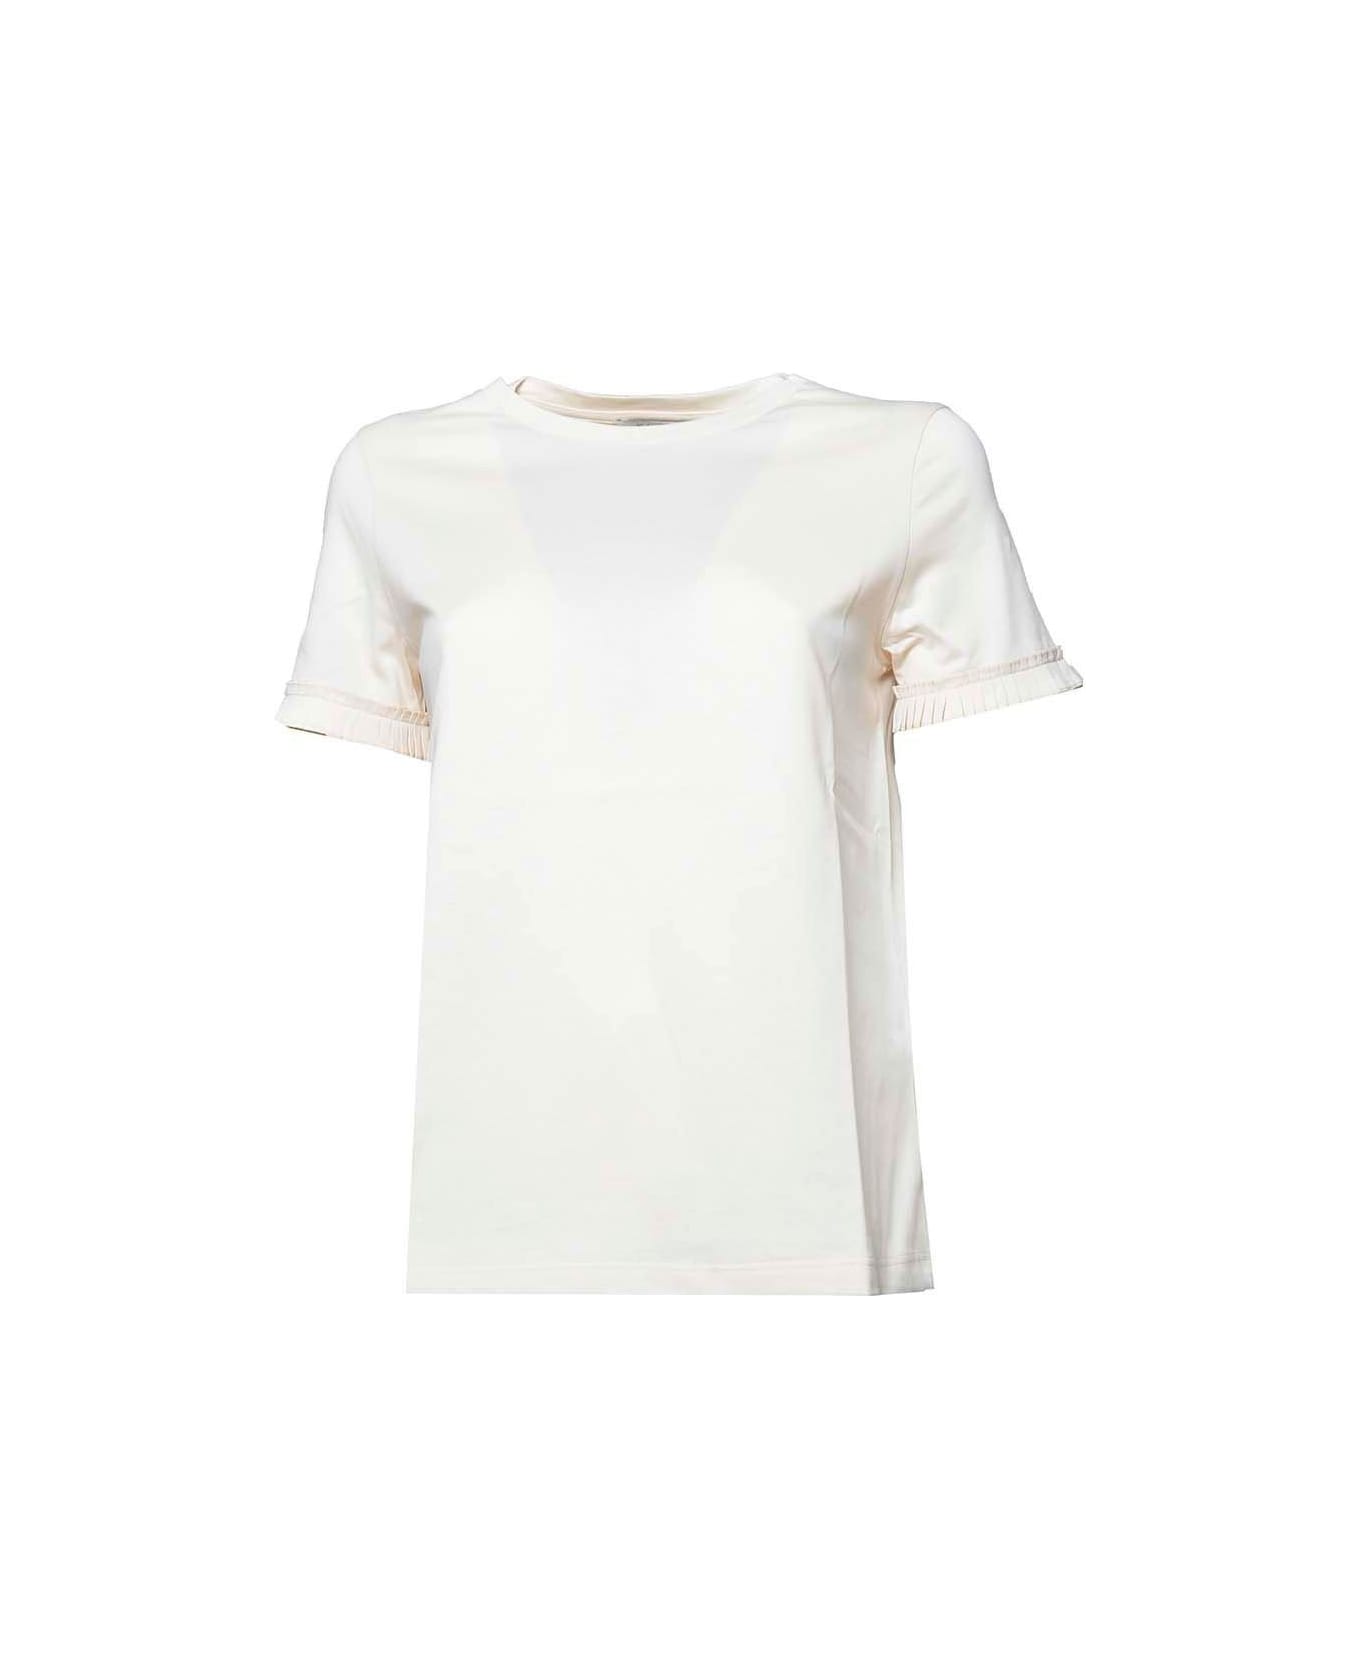 'S Max Mara Crewneck Short-sleeved T-shirt - Panna Tシャツ